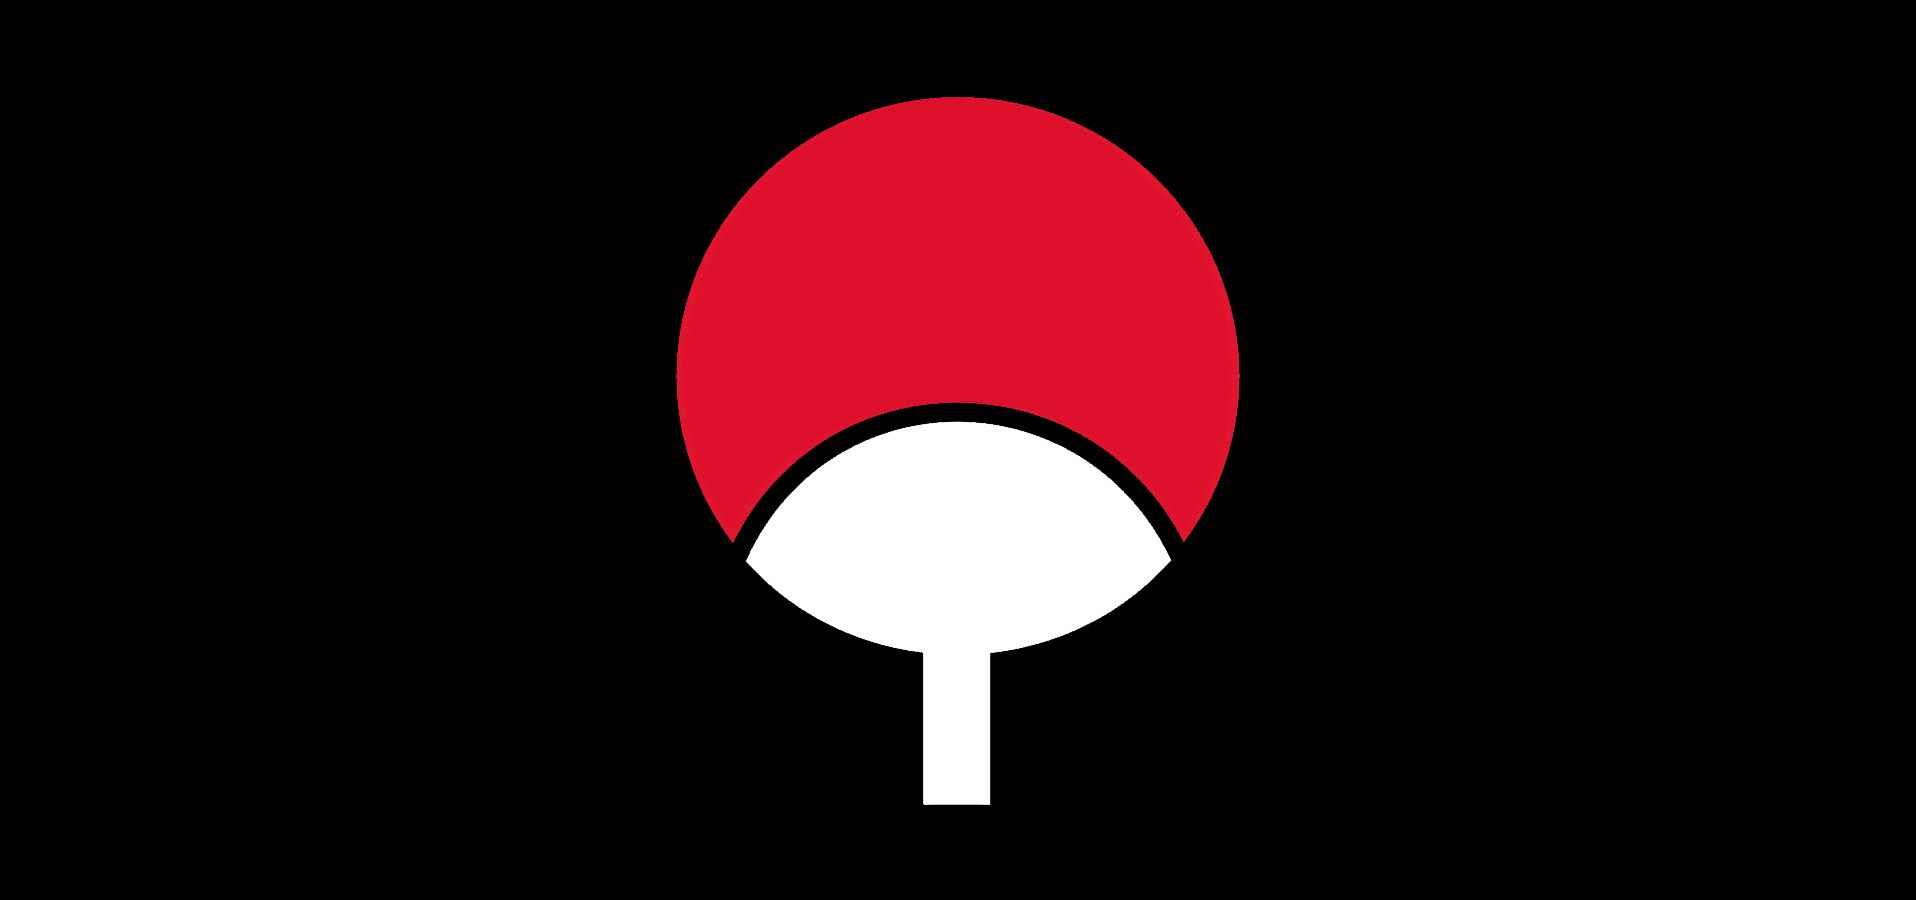 uchiha symbol tapete,rot,grafikdesign,illustration,kreis,clip art